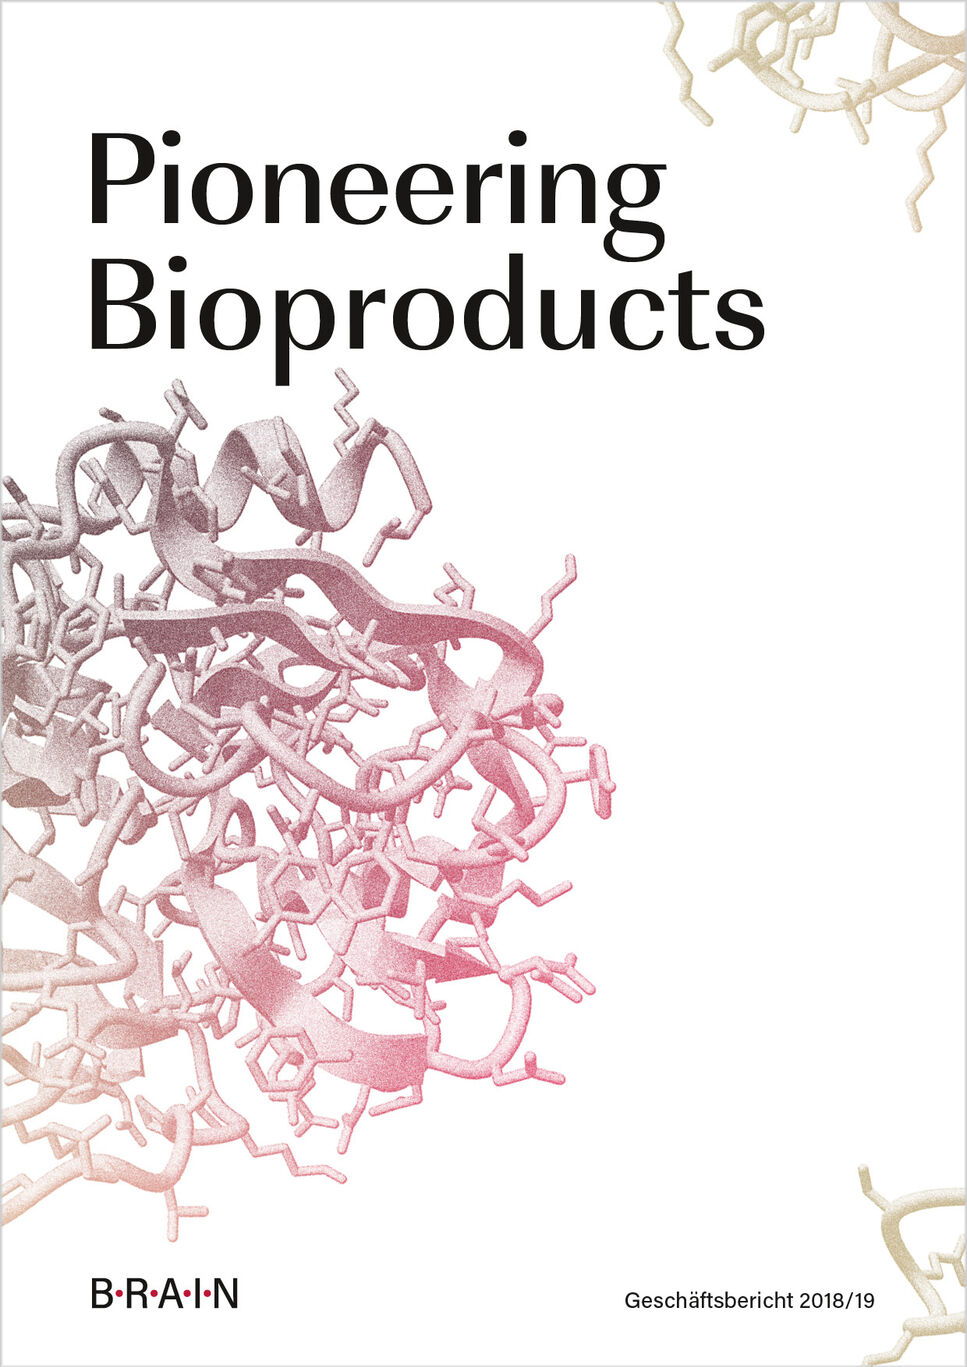 BRAIN Geschäftsbericht 2018/19 mit dem Titel „Pioneering Bioproducts“ Cover